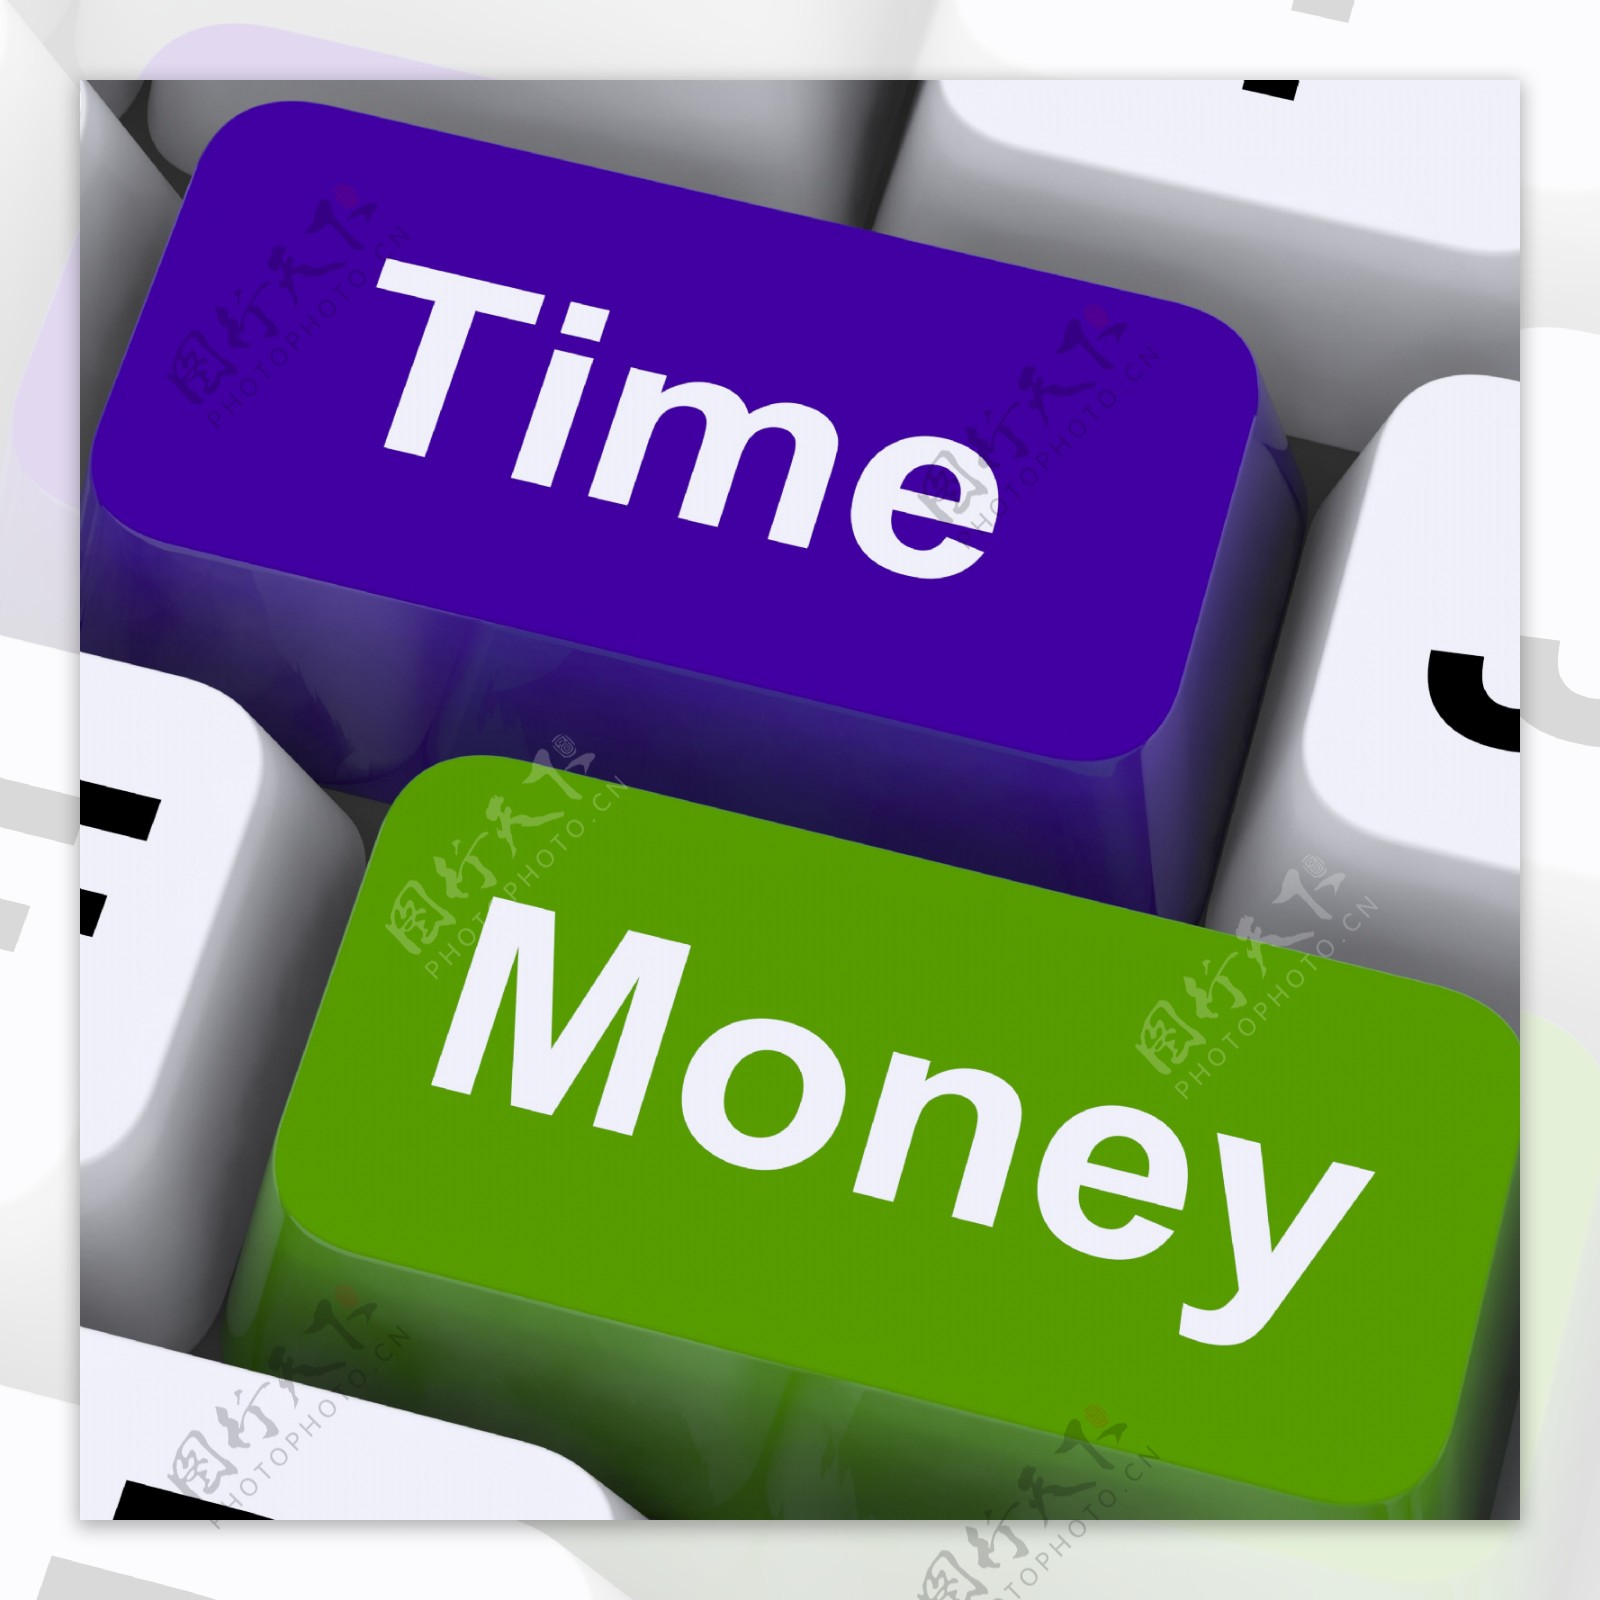 时间金钱的键显示小时比财富更重要